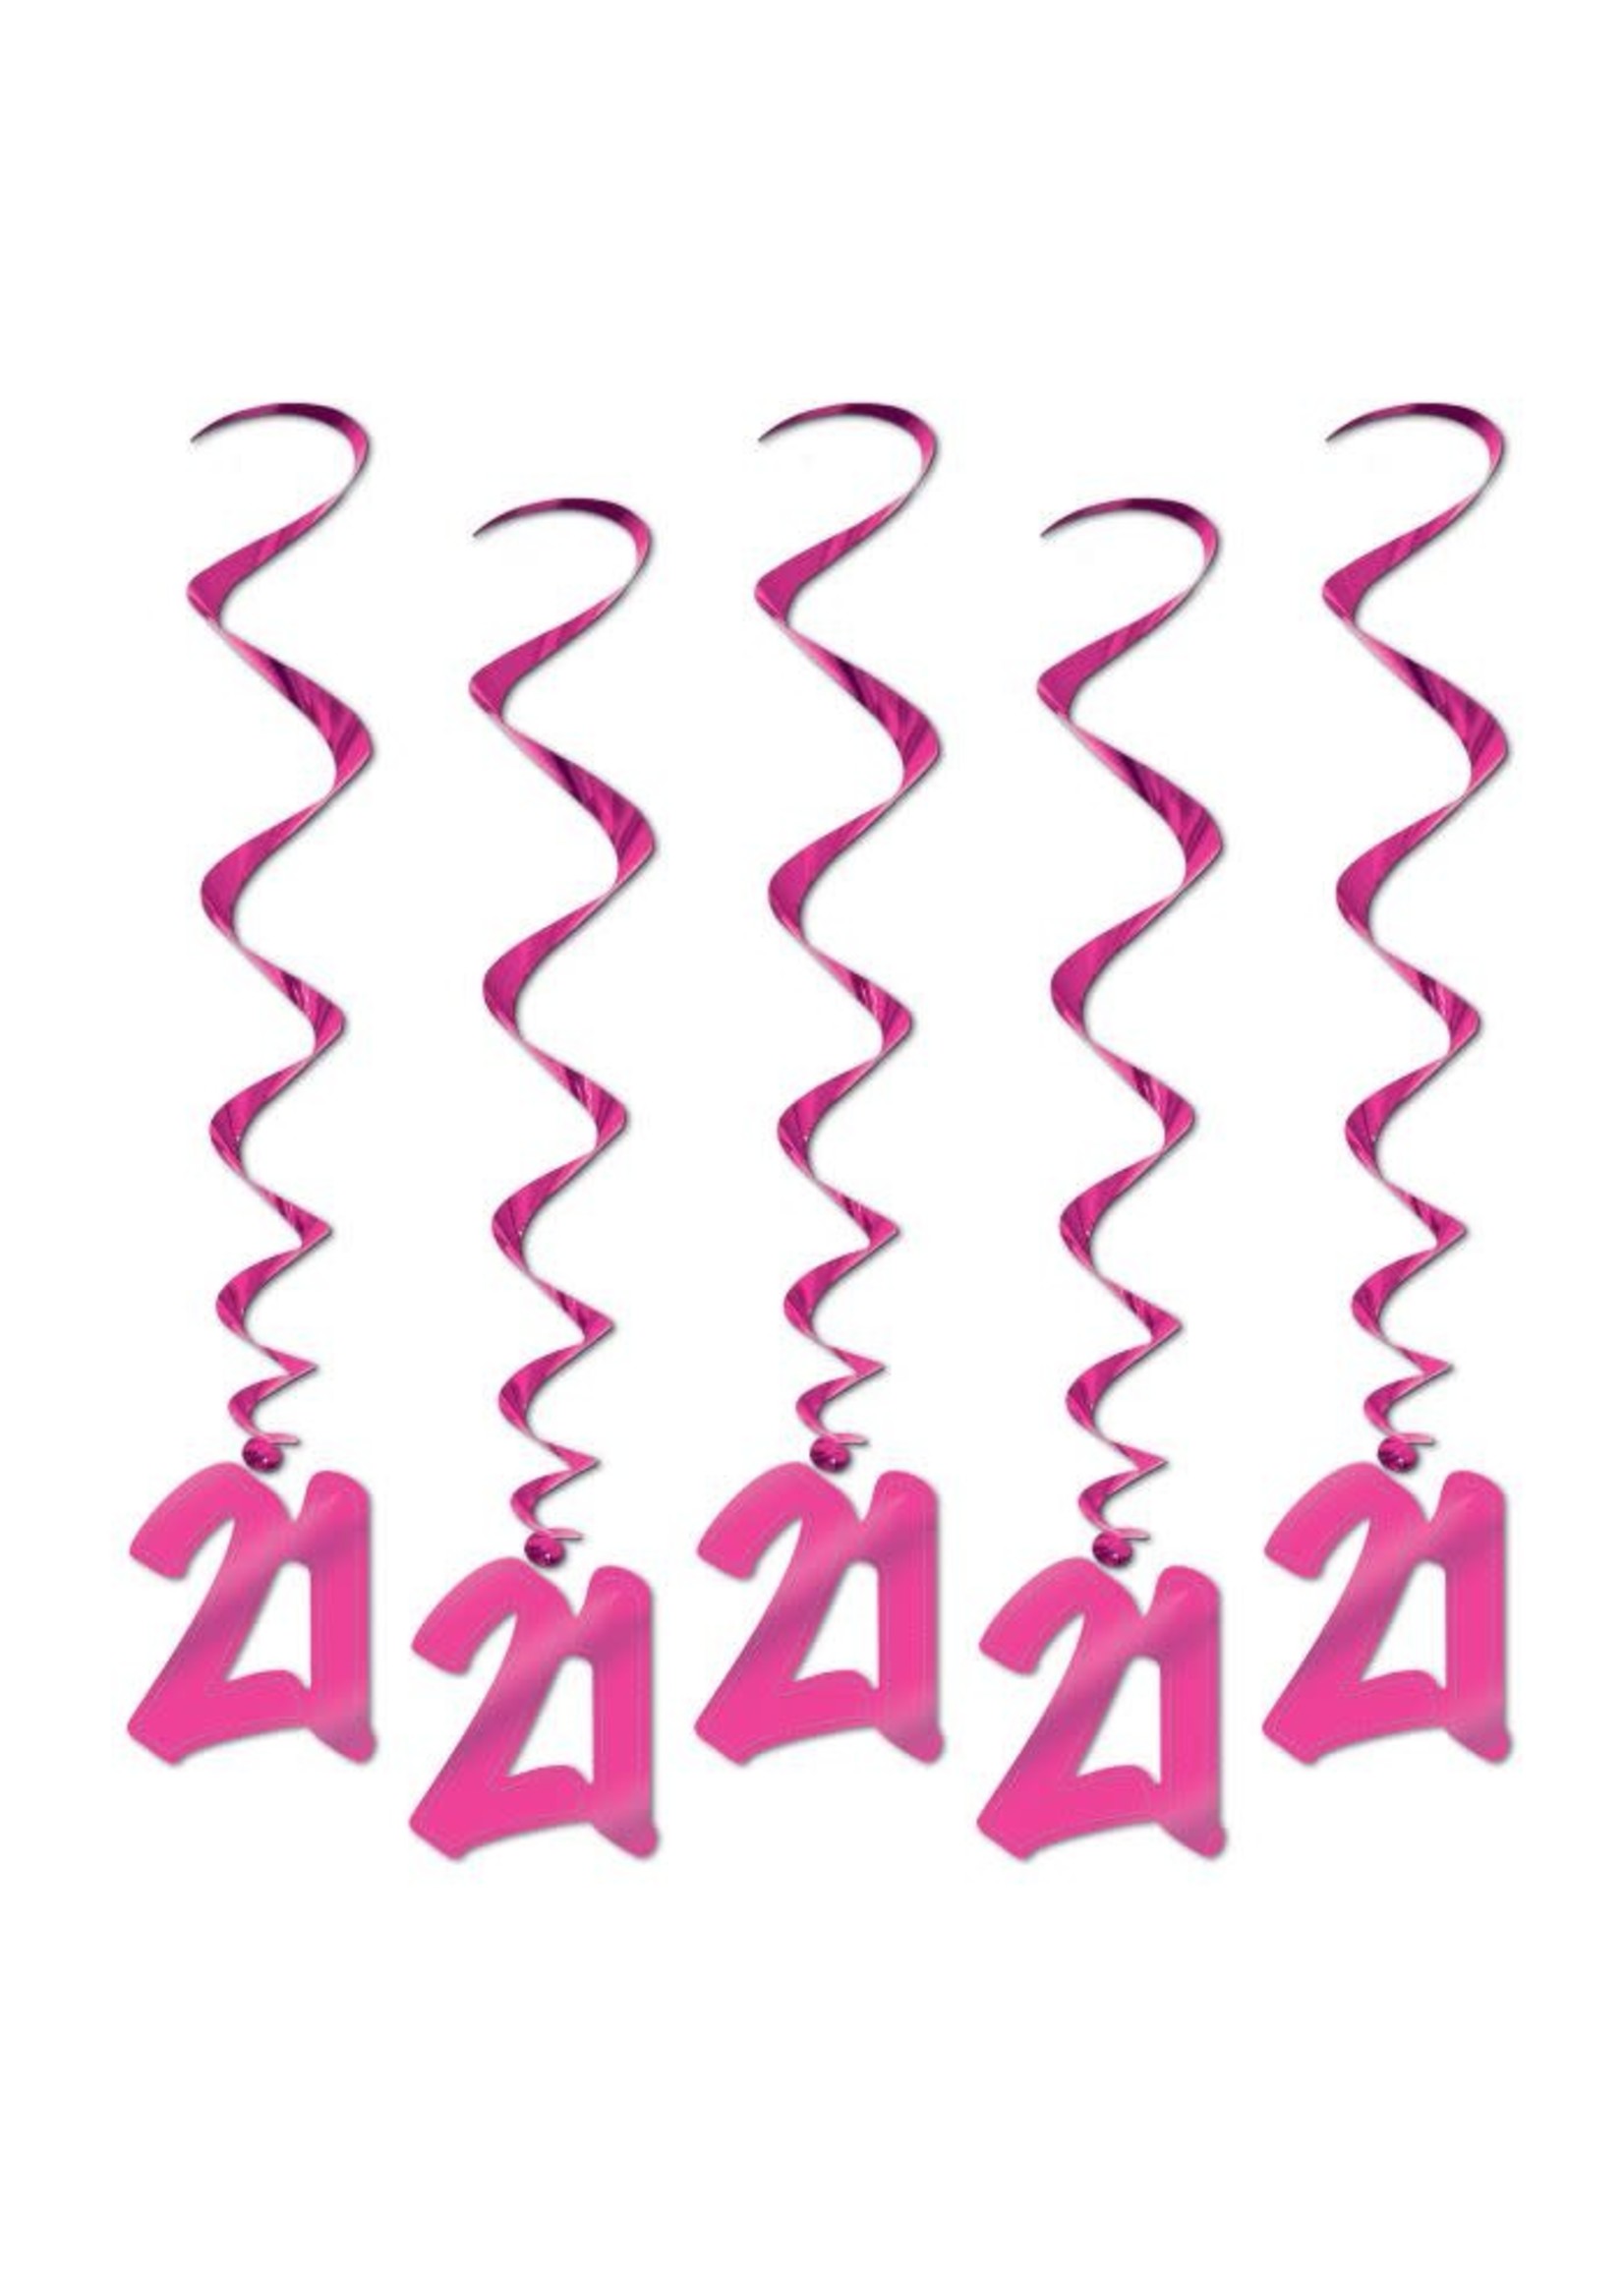 BEISTLE 21st Birthday Pink Swirl Decorations